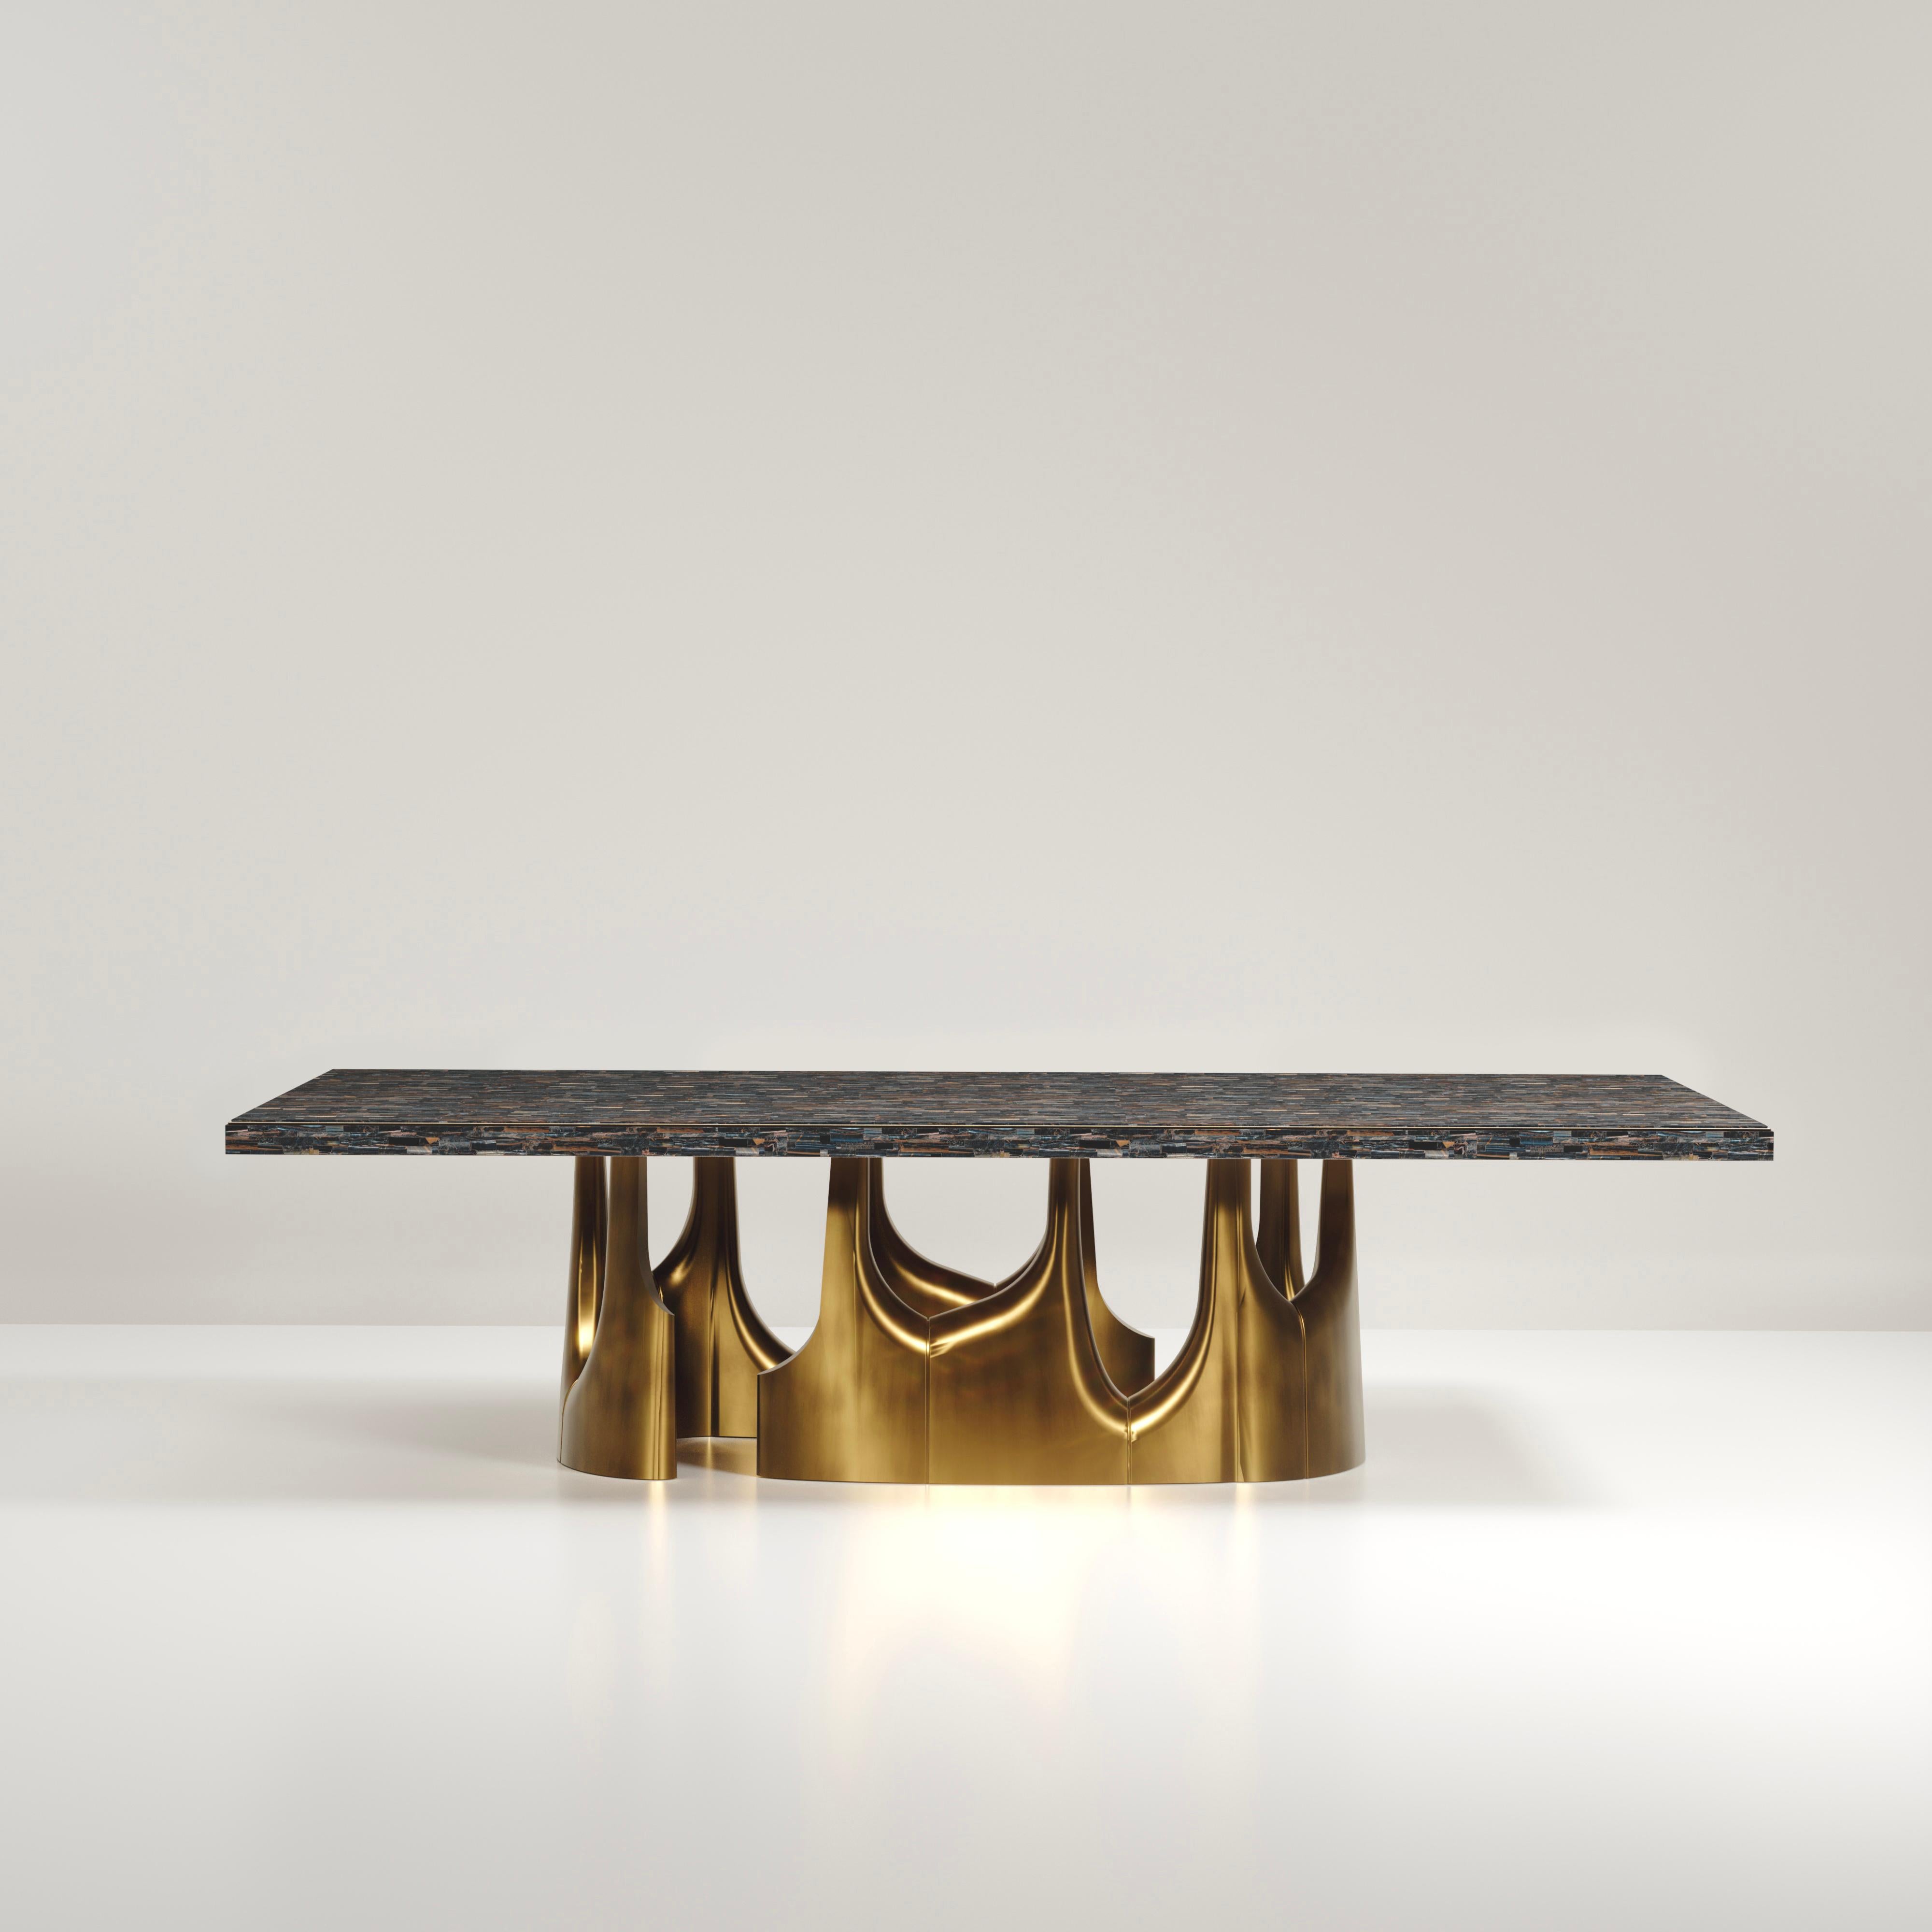 La table de salle à manger Triptych II de R&Y Augousti est une étonnante pièce sculpturale à multiples facettes. Les magnifiques détails gravés à la main sur la longue base en bronze-patine démontrent l'incroyable travail artisanal d'Augousti. La